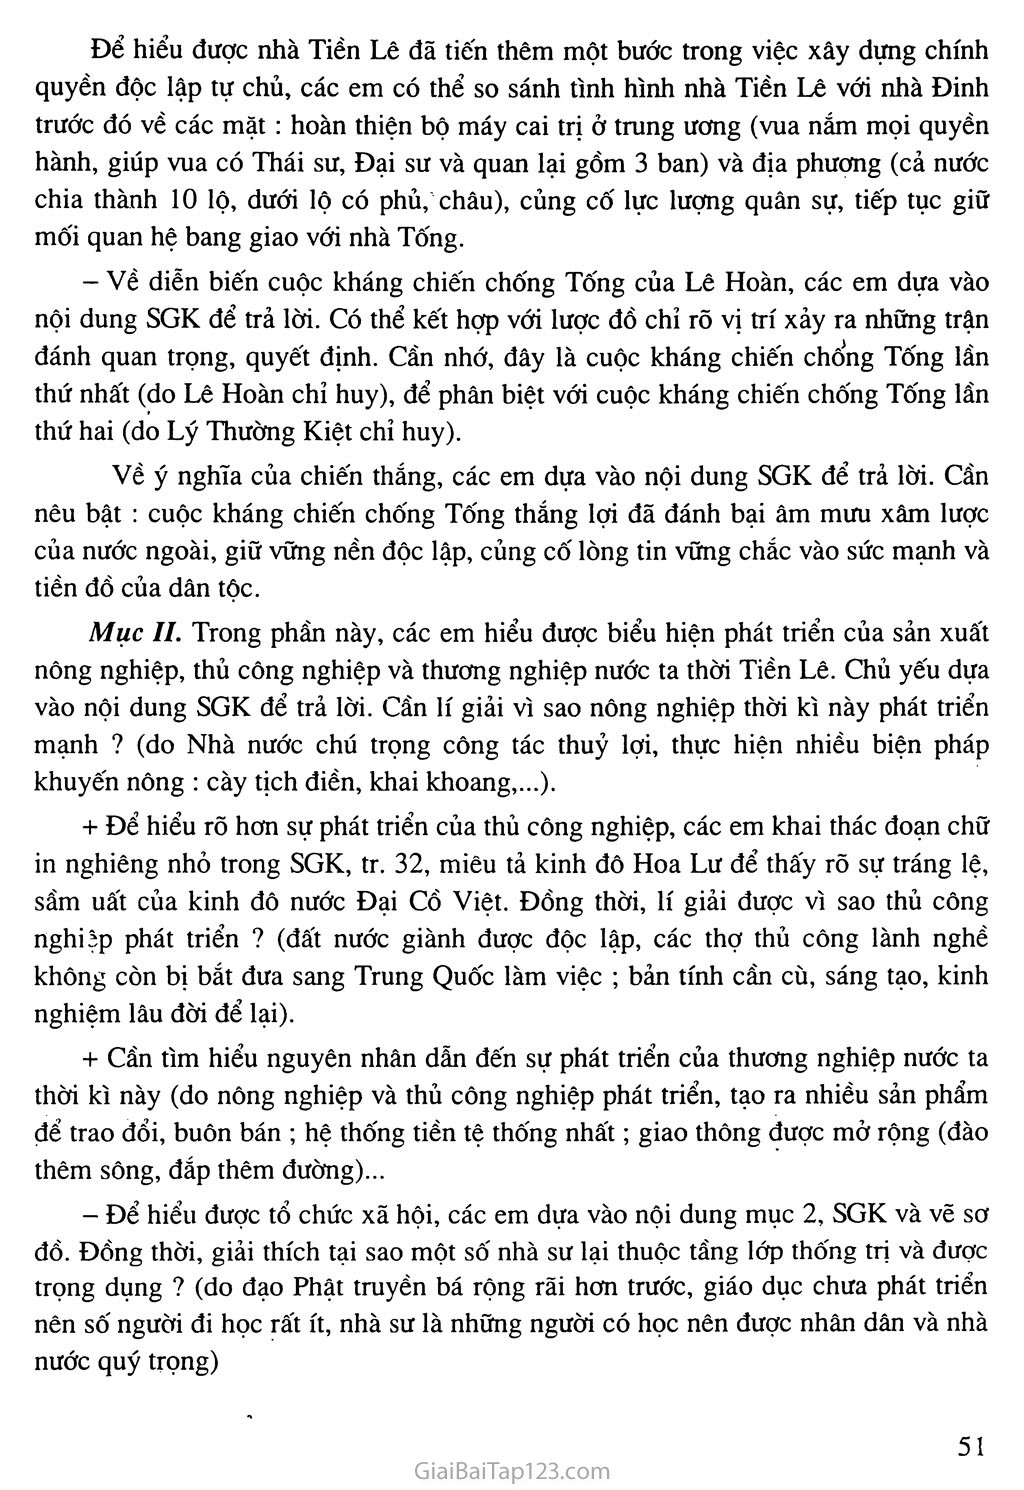 Bài 9: Nước Đại Cồ Việt thời Đinh - Tiền Lê trang 5